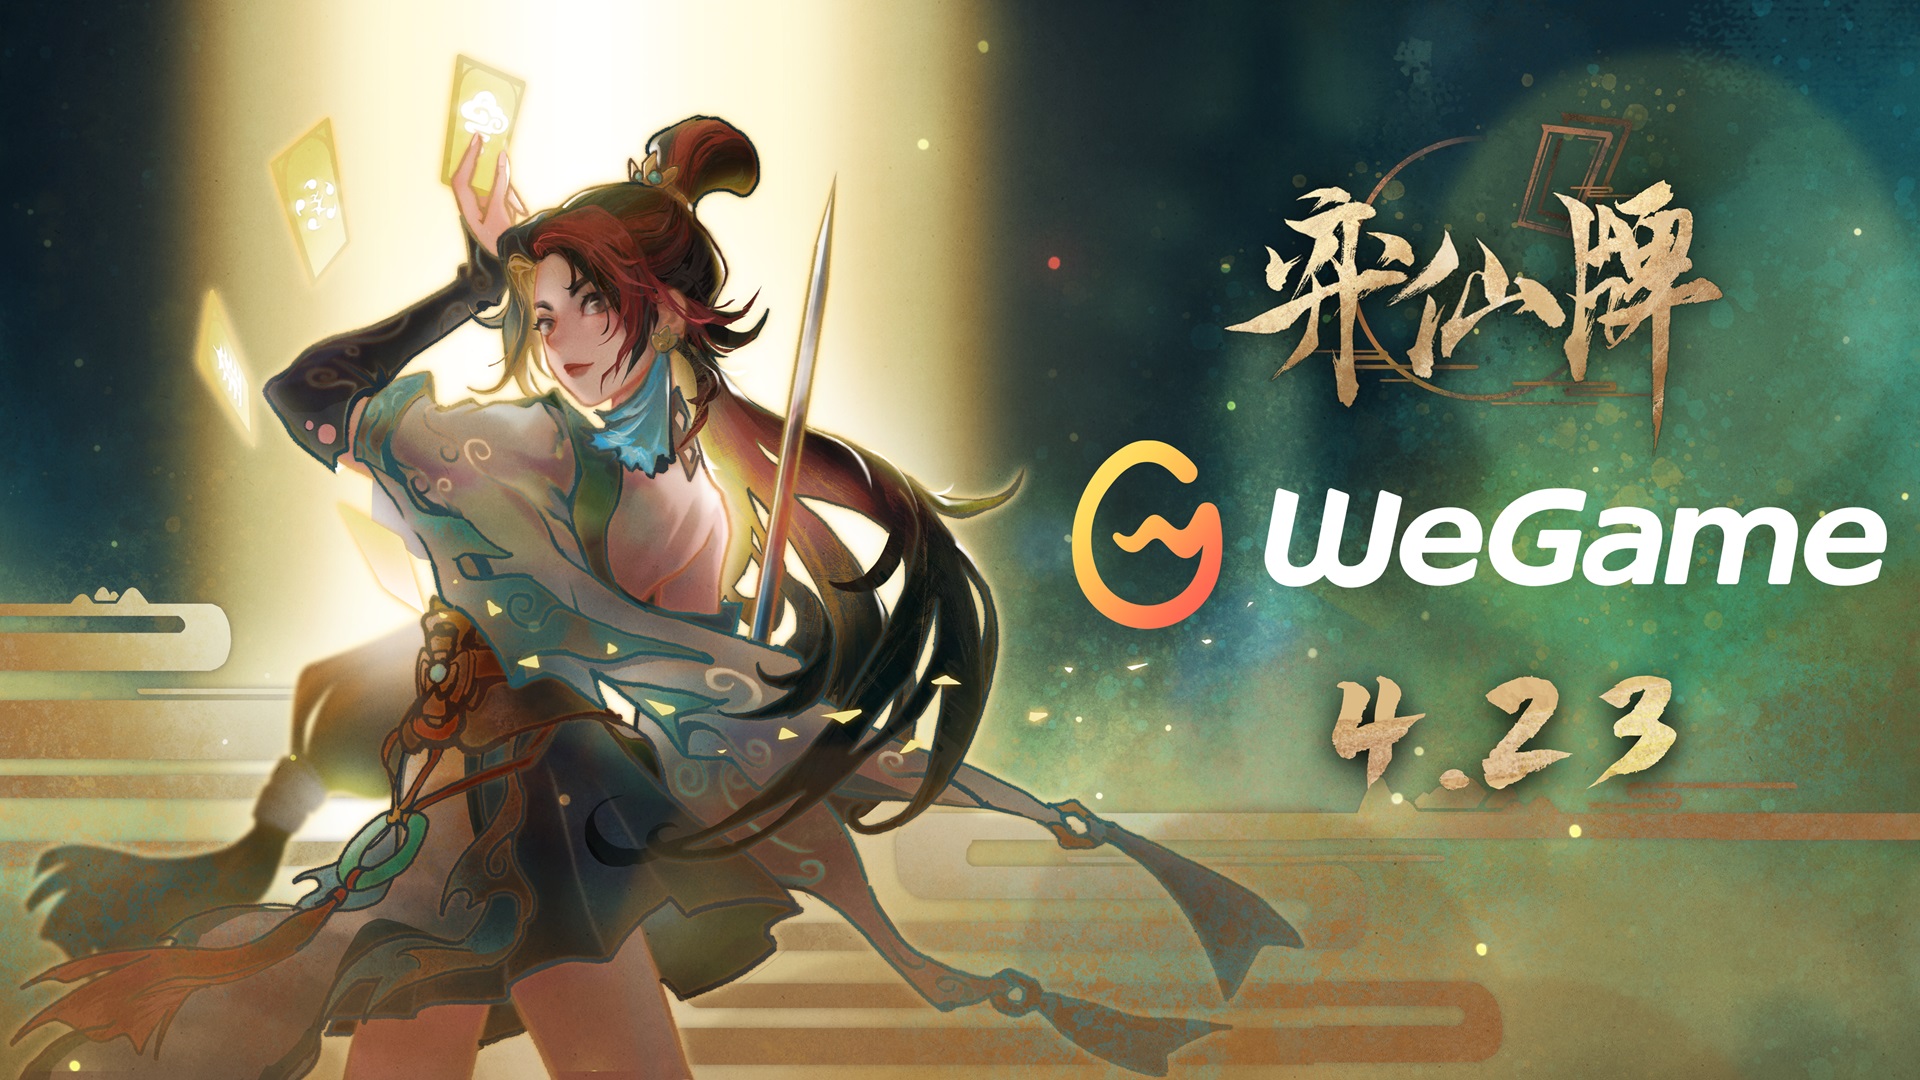 ​免费修仙卡牌对战游戏《弈仙牌》将于4月23日登陆WeGame平台